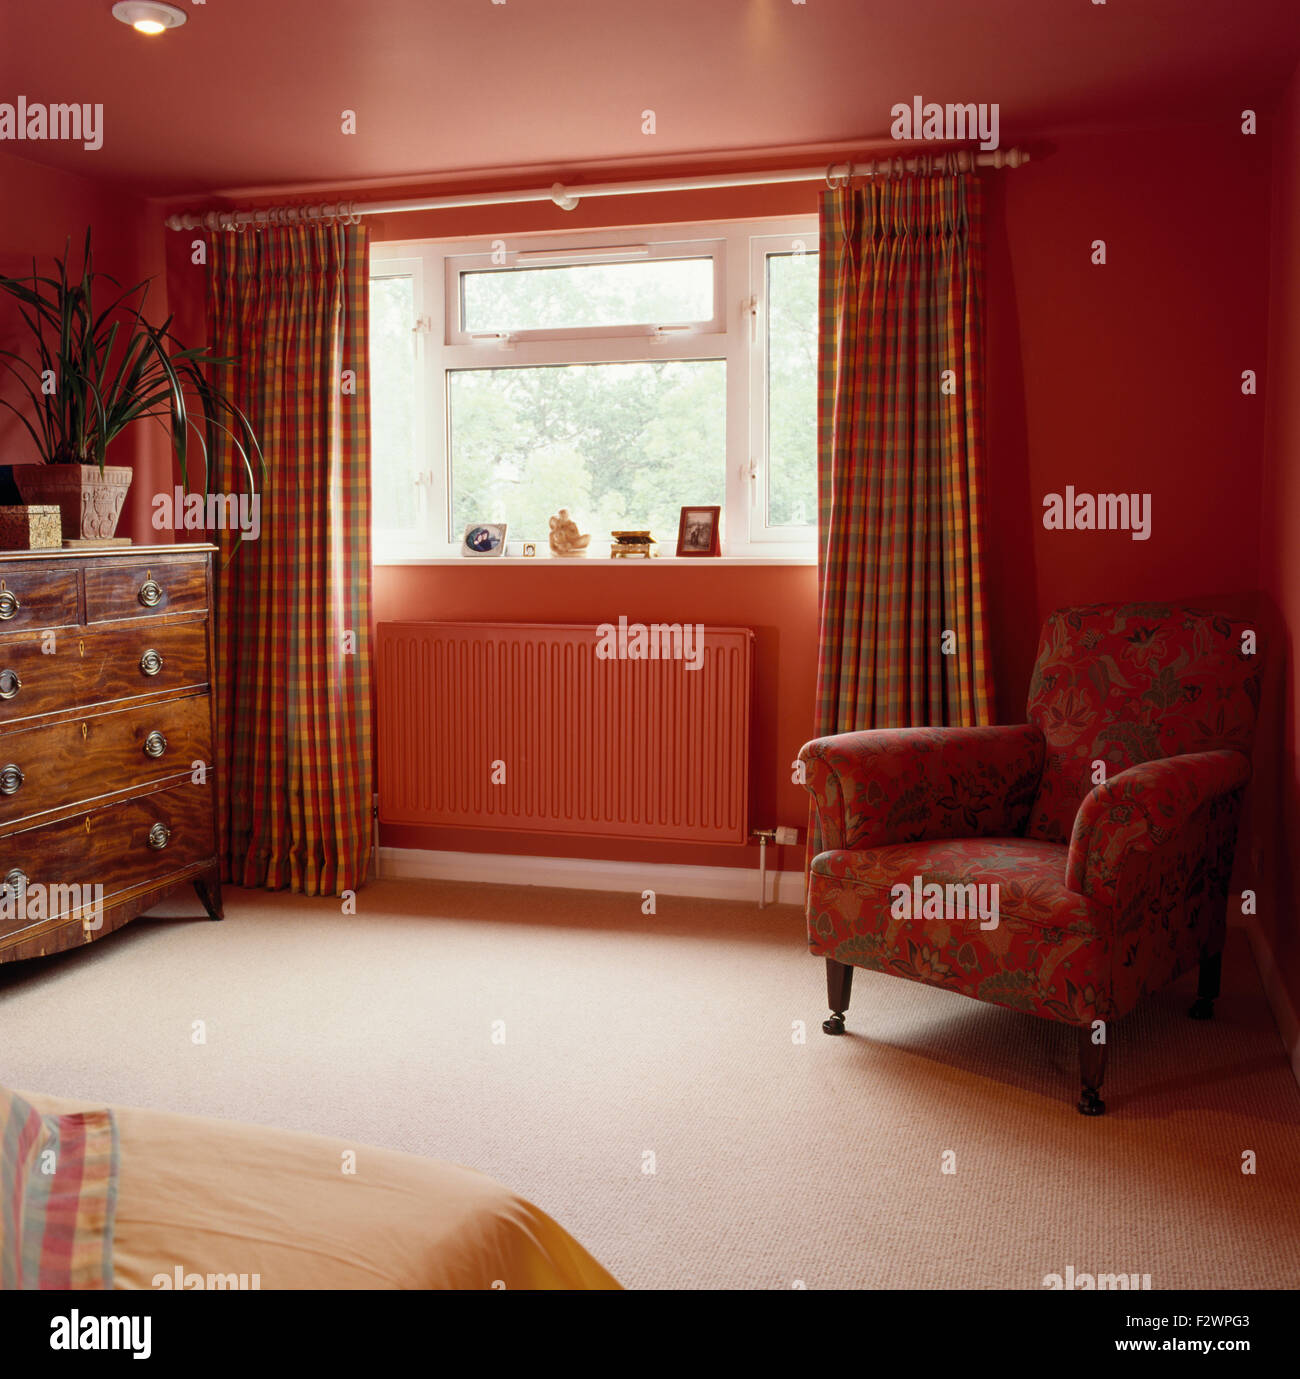 Controllato tende su finestra sopra radiatore verniciato in rosso degli anni novanta camera con moquette color crema e rosso sedia Foto Stock